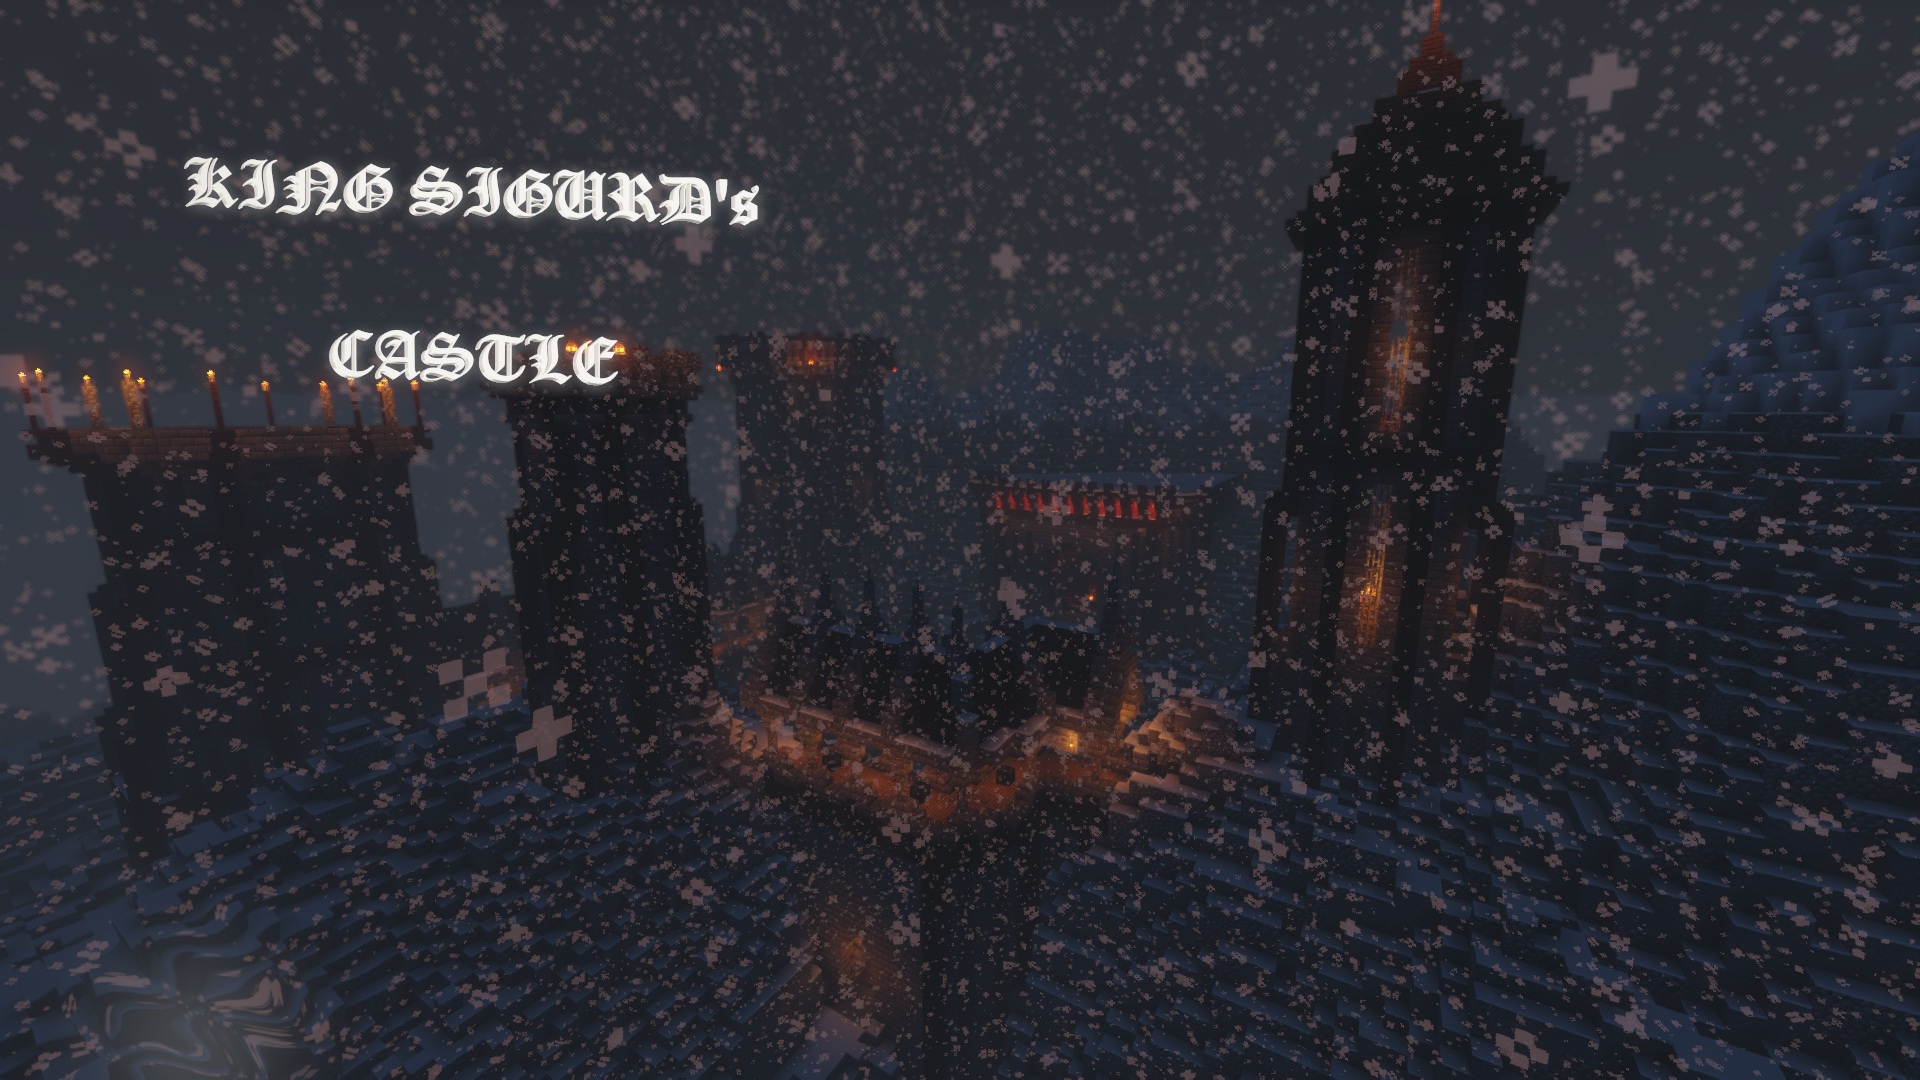 İndir King Sigurd's Castle için Minecraft 1.14.4